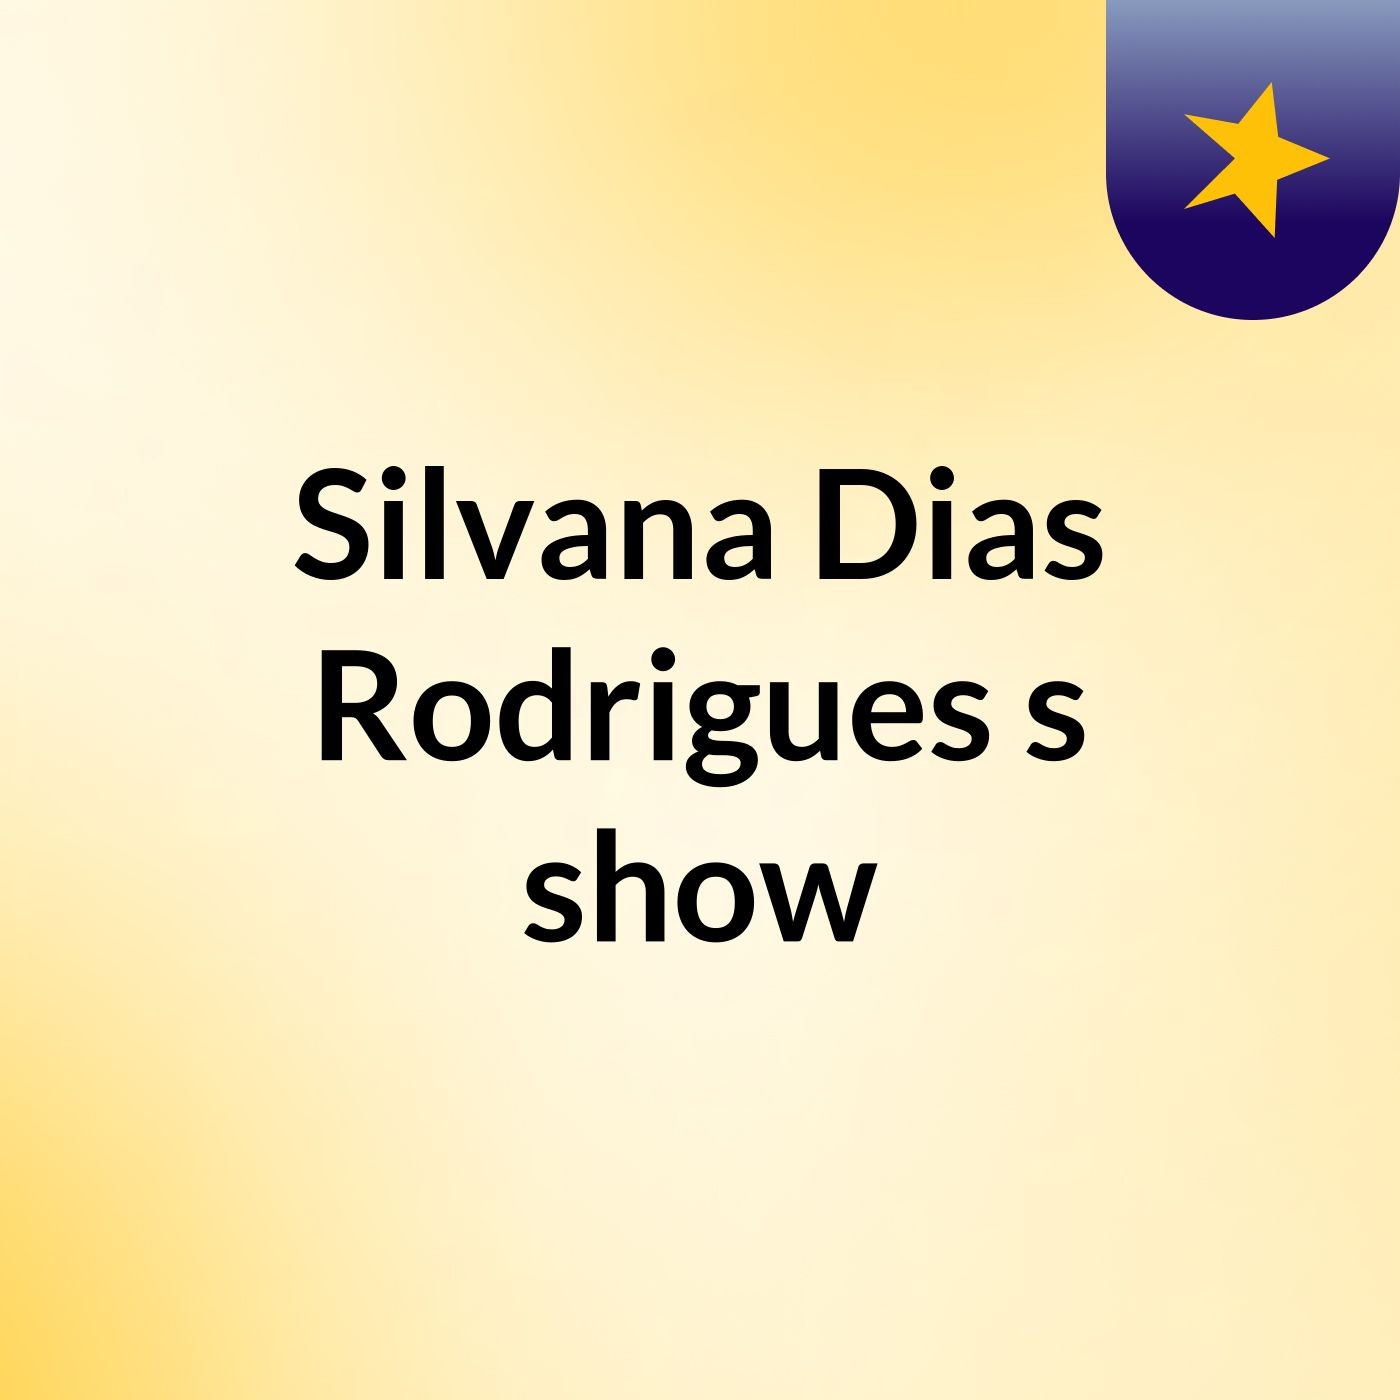 Silvana Dias Rodrigues's show